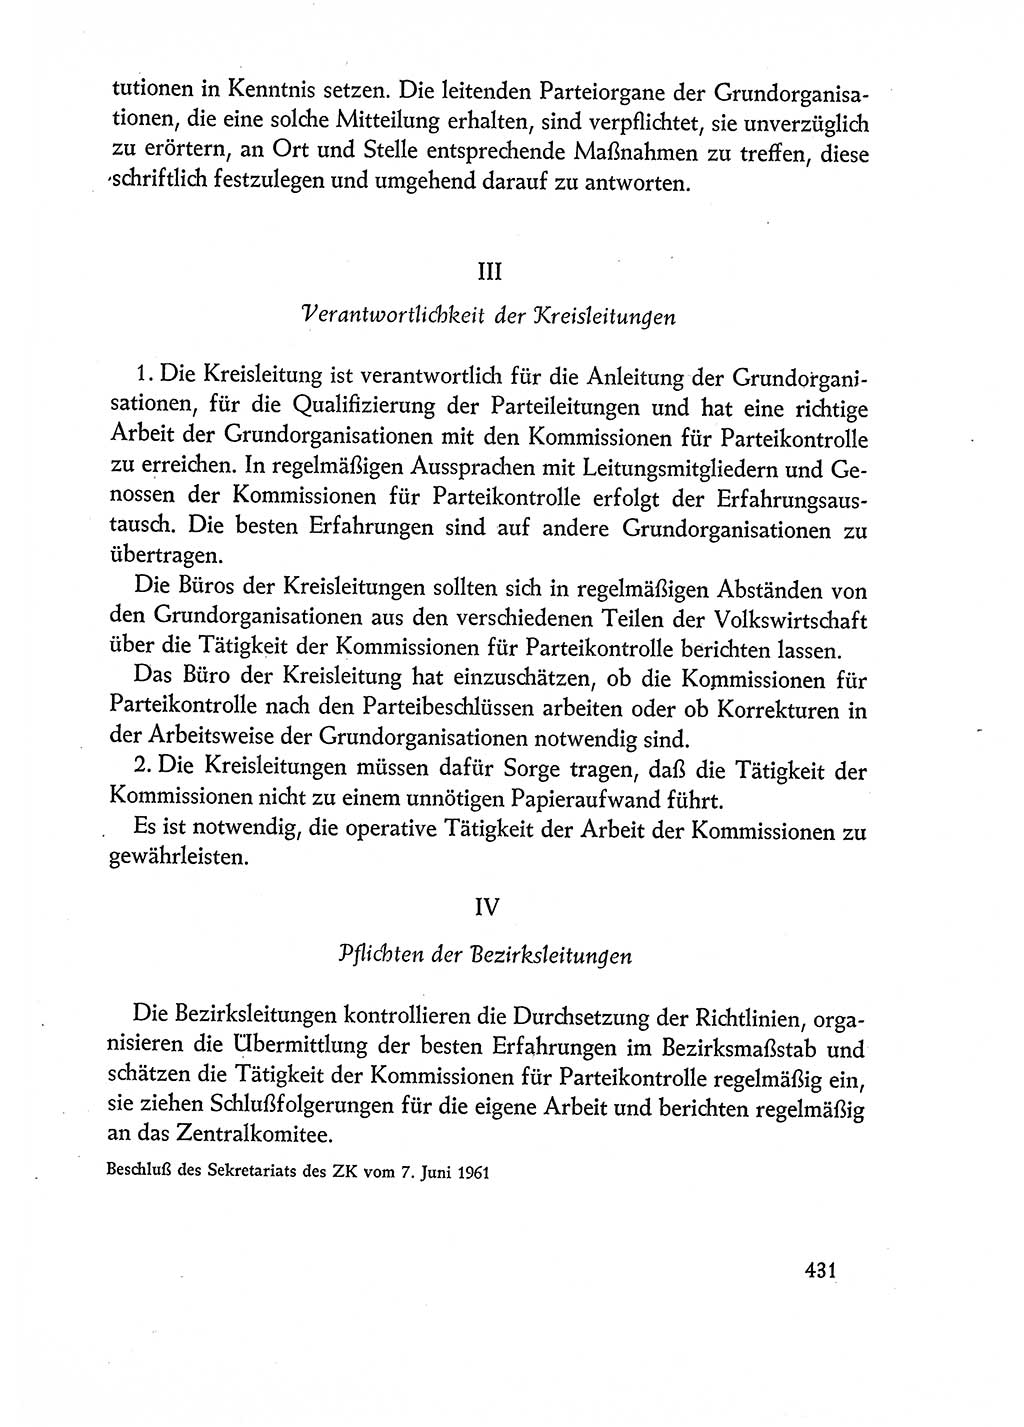 Dokumente der Sozialistischen Einheitspartei Deutschlands (SED) [Deutsche Demokratische Republik (DDR)] 1960-1961, Seite 431 (Dok. SED DDR 1960-1961, S. 431)